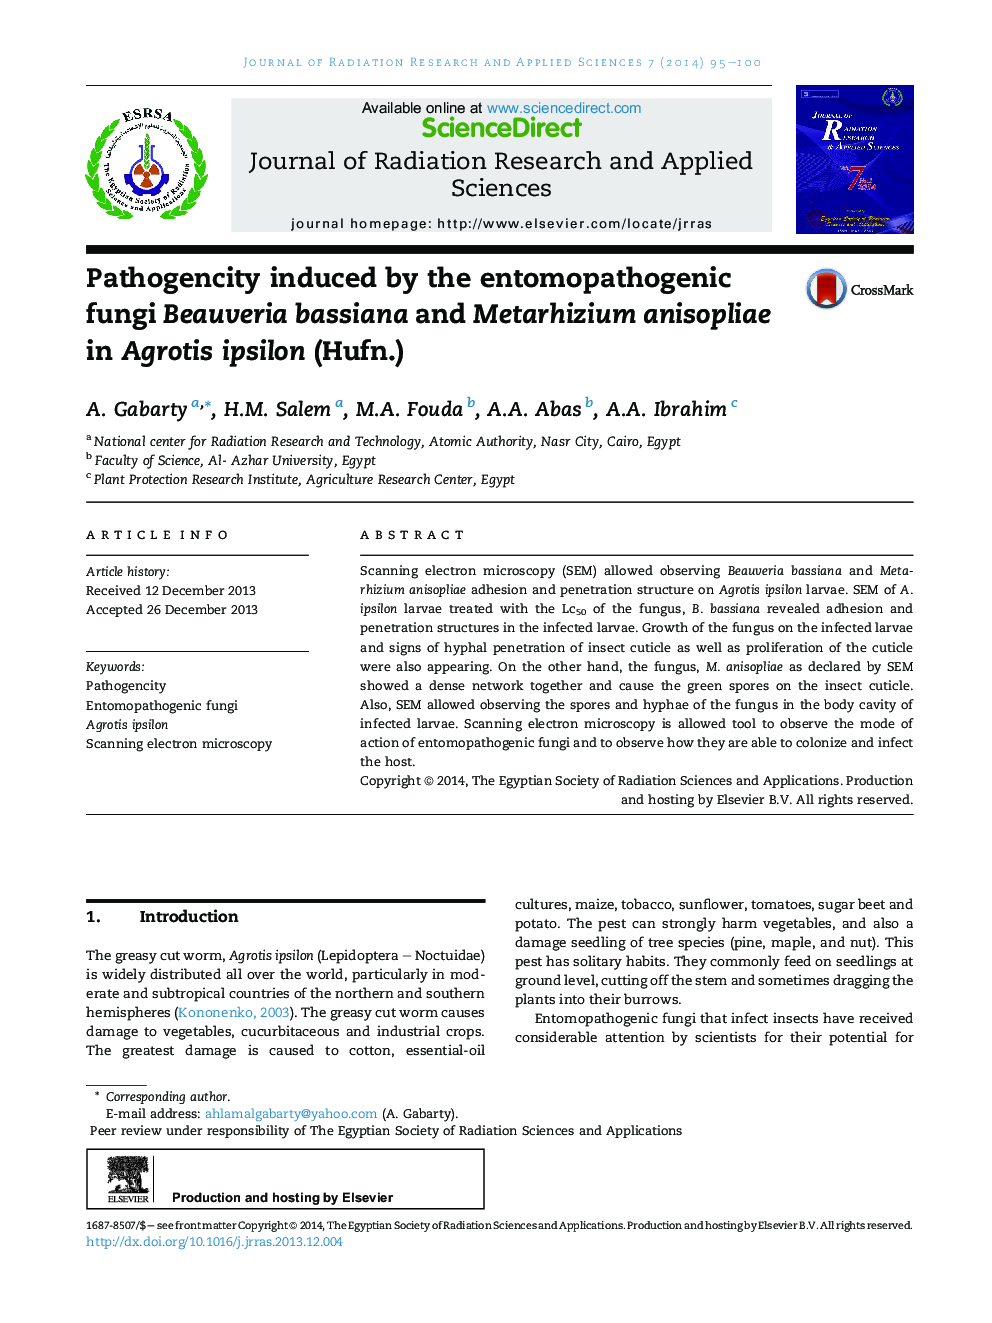 Pathogencity induced by the entomopathogenic fungi Beauveria bassiana and Metarhizium anisopliae in Agrotis ipsilon (Hufn.) 